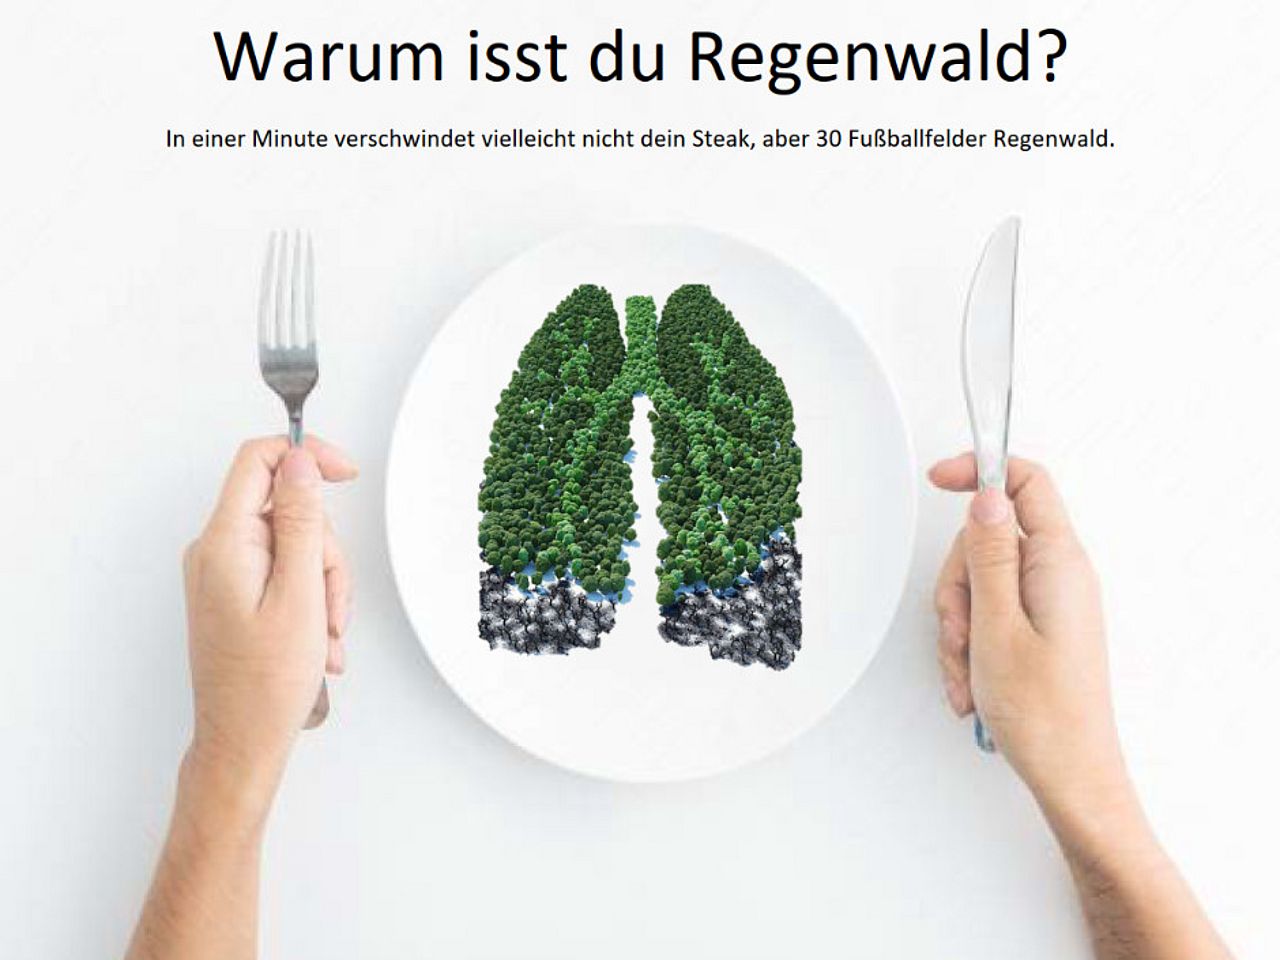 „Warum isst du Regenwald?" von Sonya E., Meike E. & Frederic W. von der Carl-Engler-Schule Karlsruhe